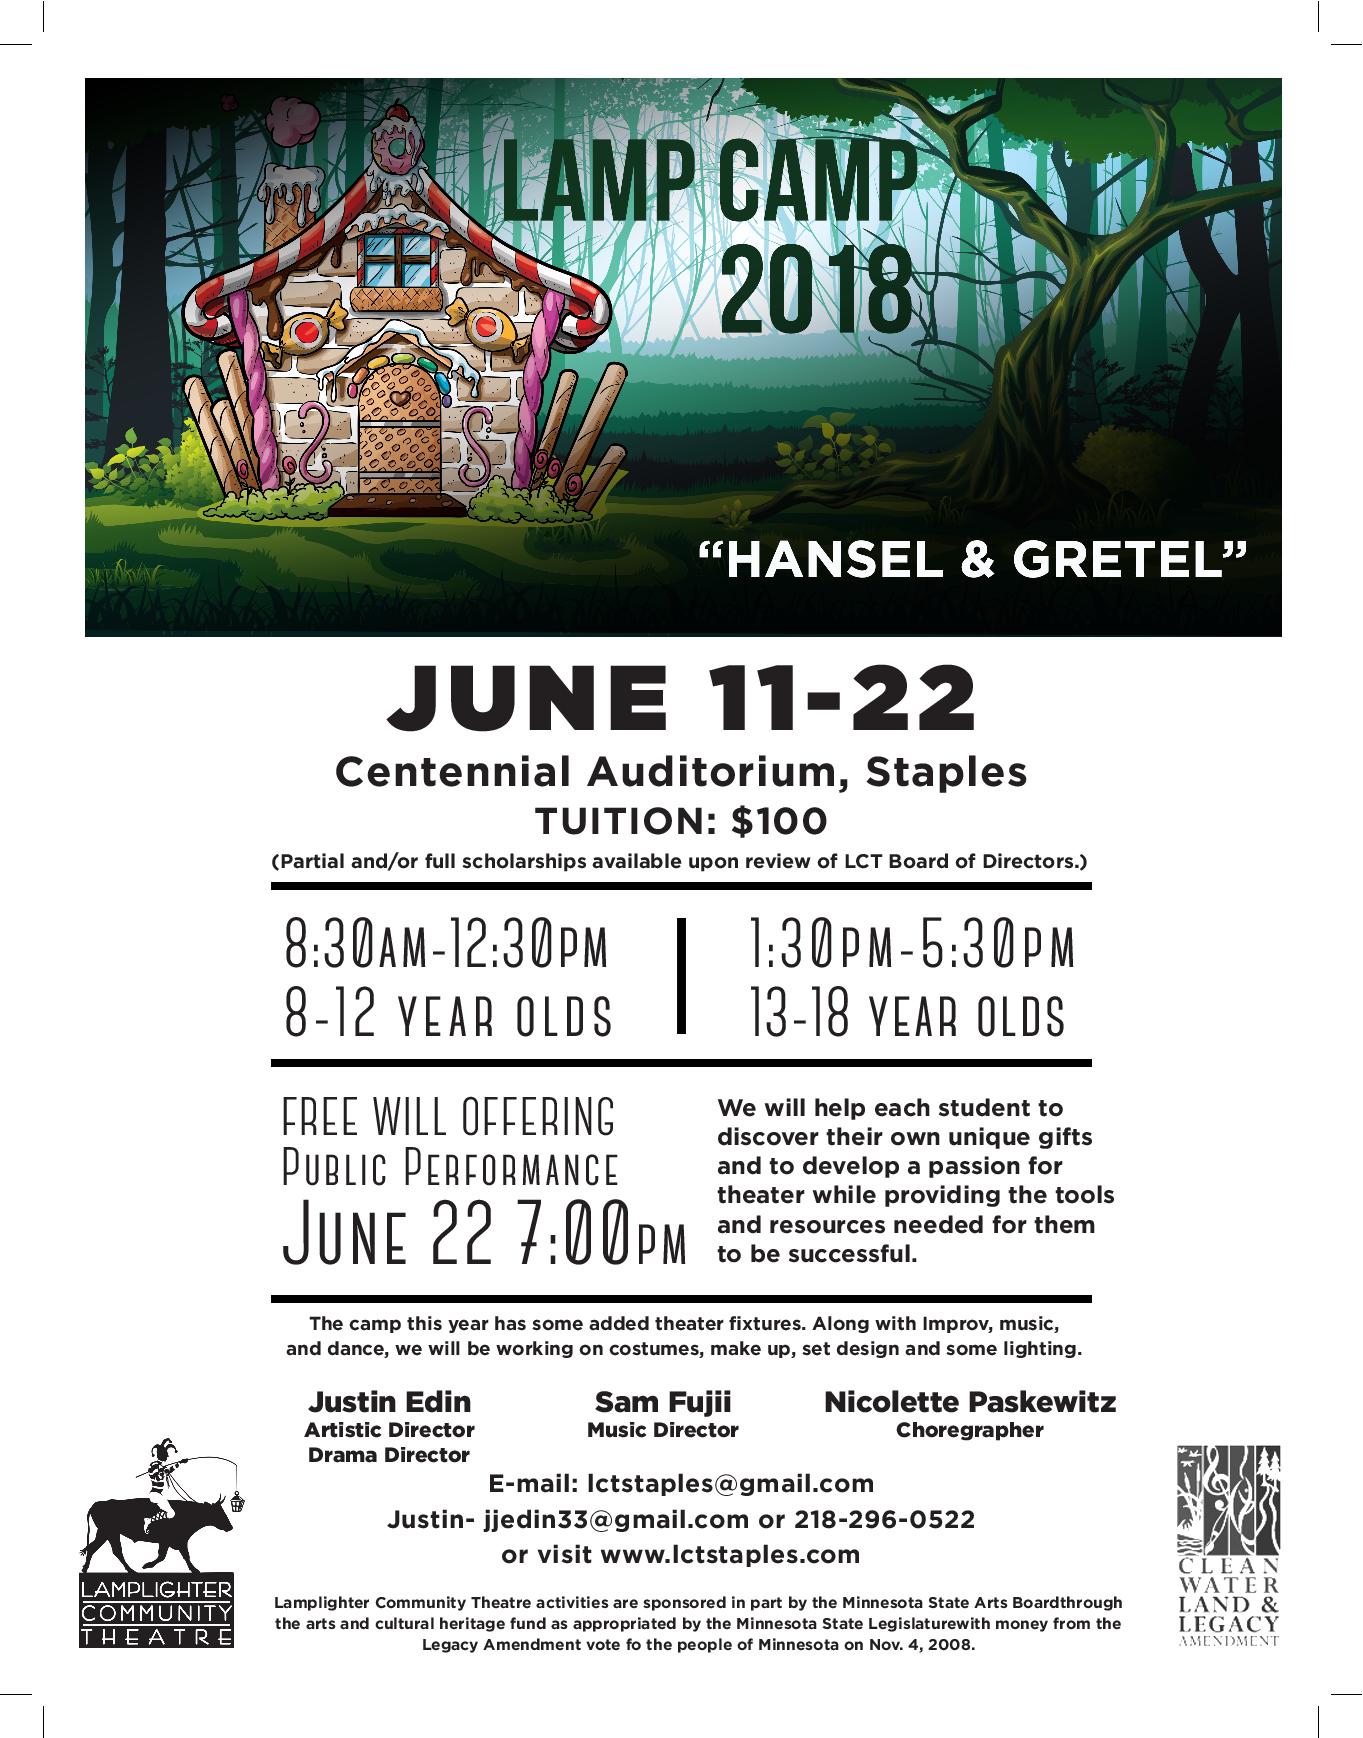 2018 Lamp Camp – Hansel & Gretel